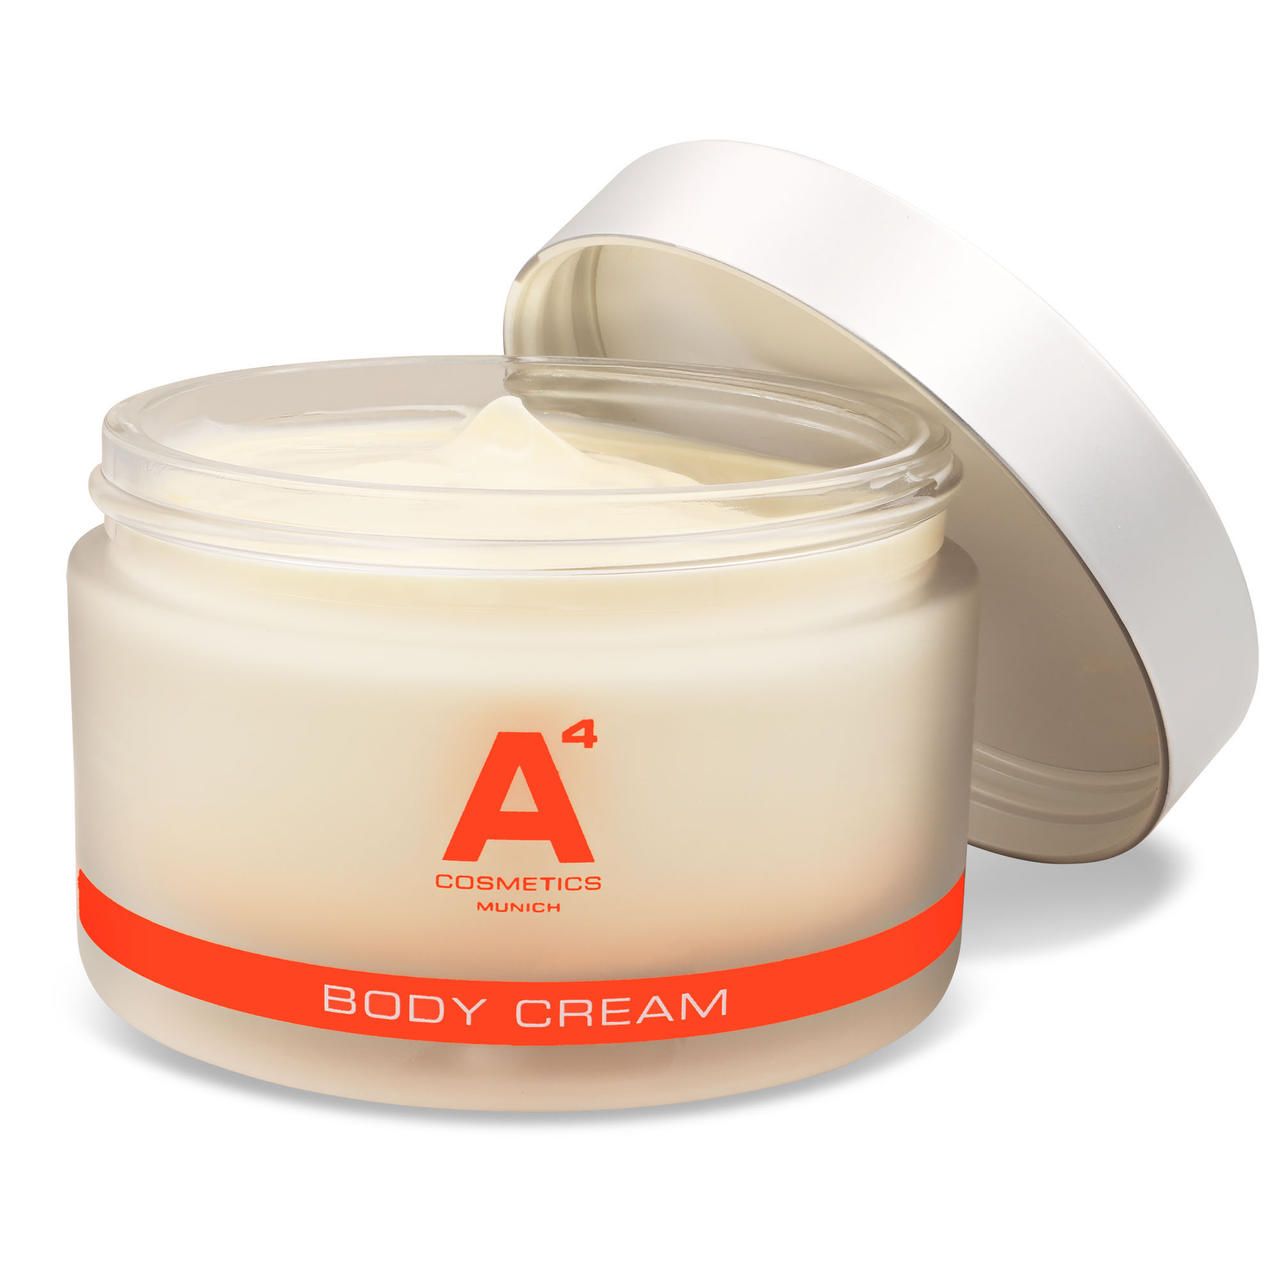 A4 Cosmetics, Body Cream